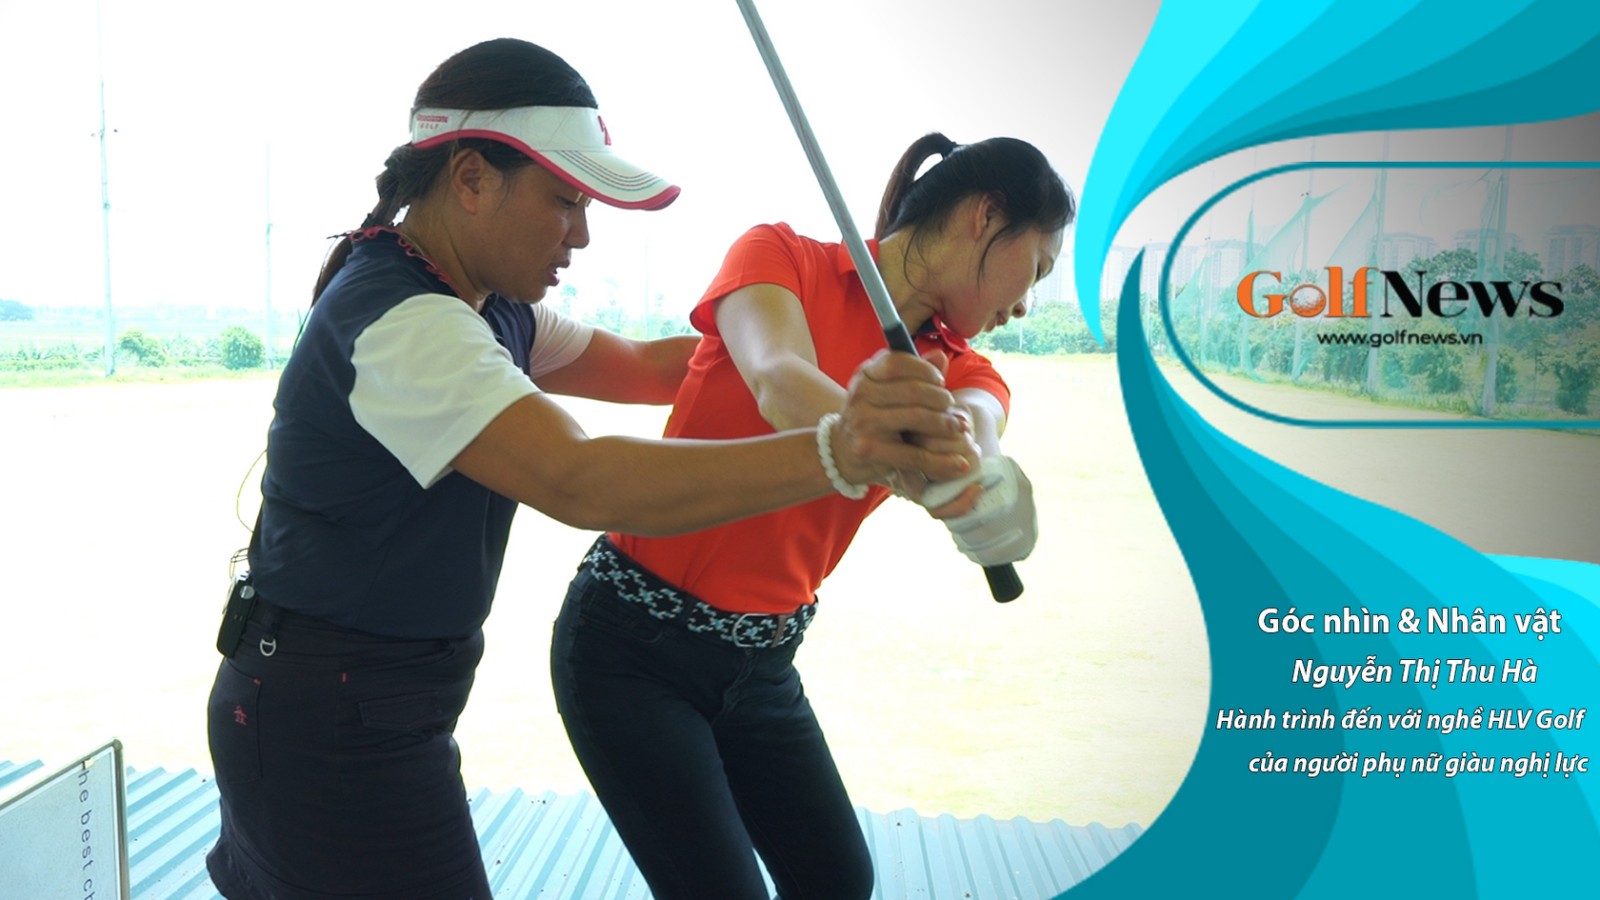 Nguyễn Thị Thu Hà: Hành trình đến với nghề HLV Golf của người phụ nữ giàu nghị lực